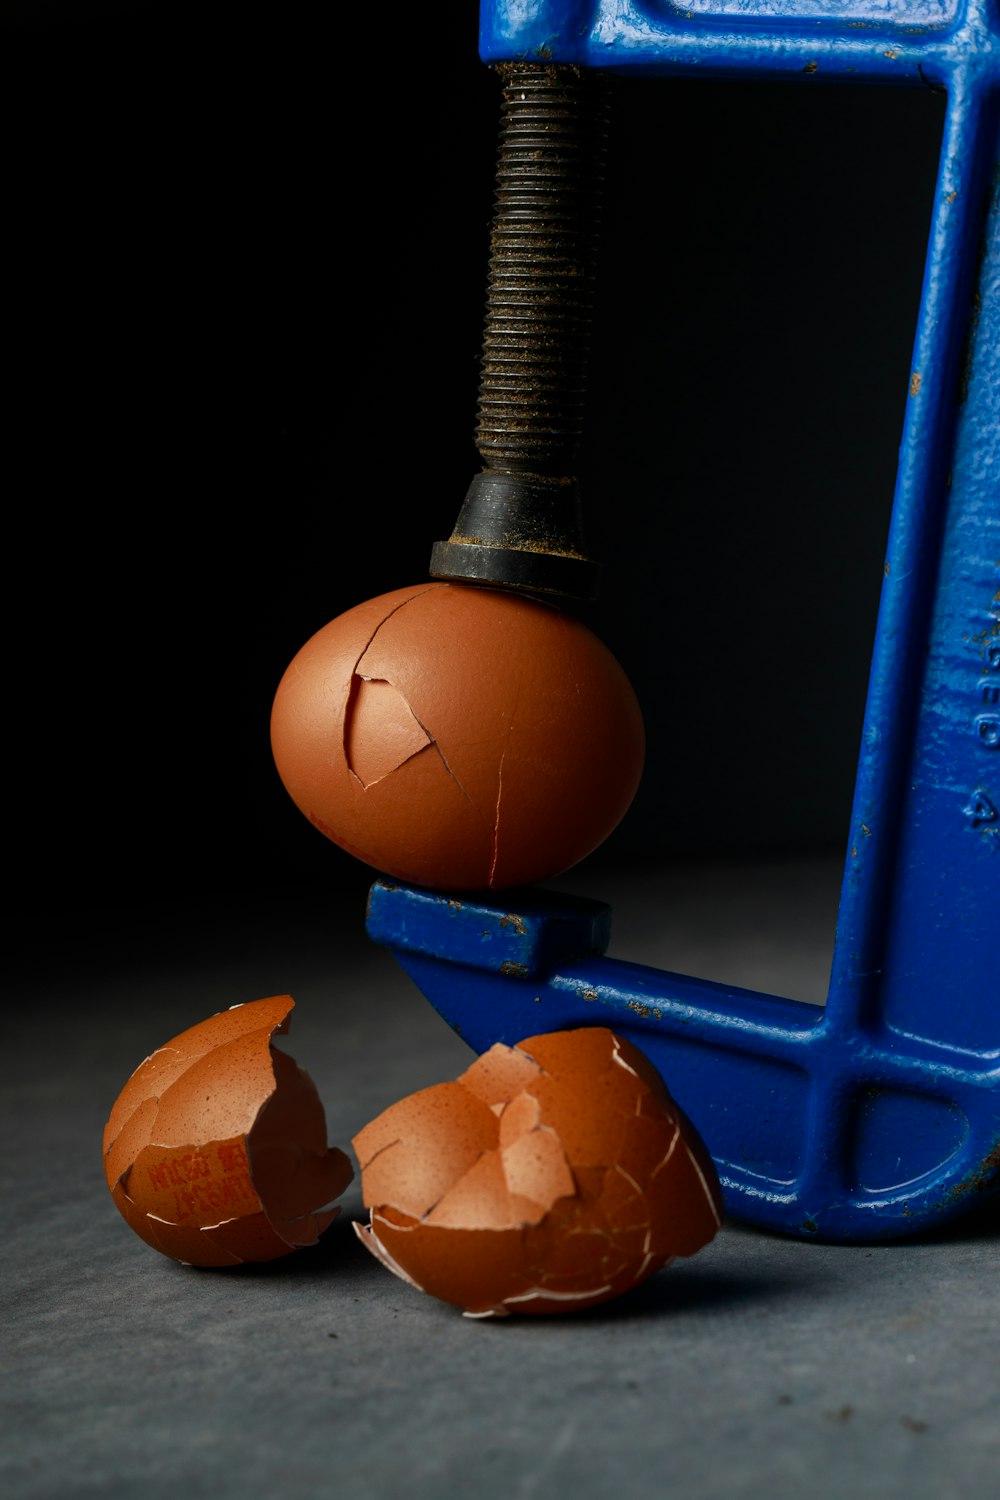 Ein zerbrochenes Ei, das auf einem blauen Objekt sitzt